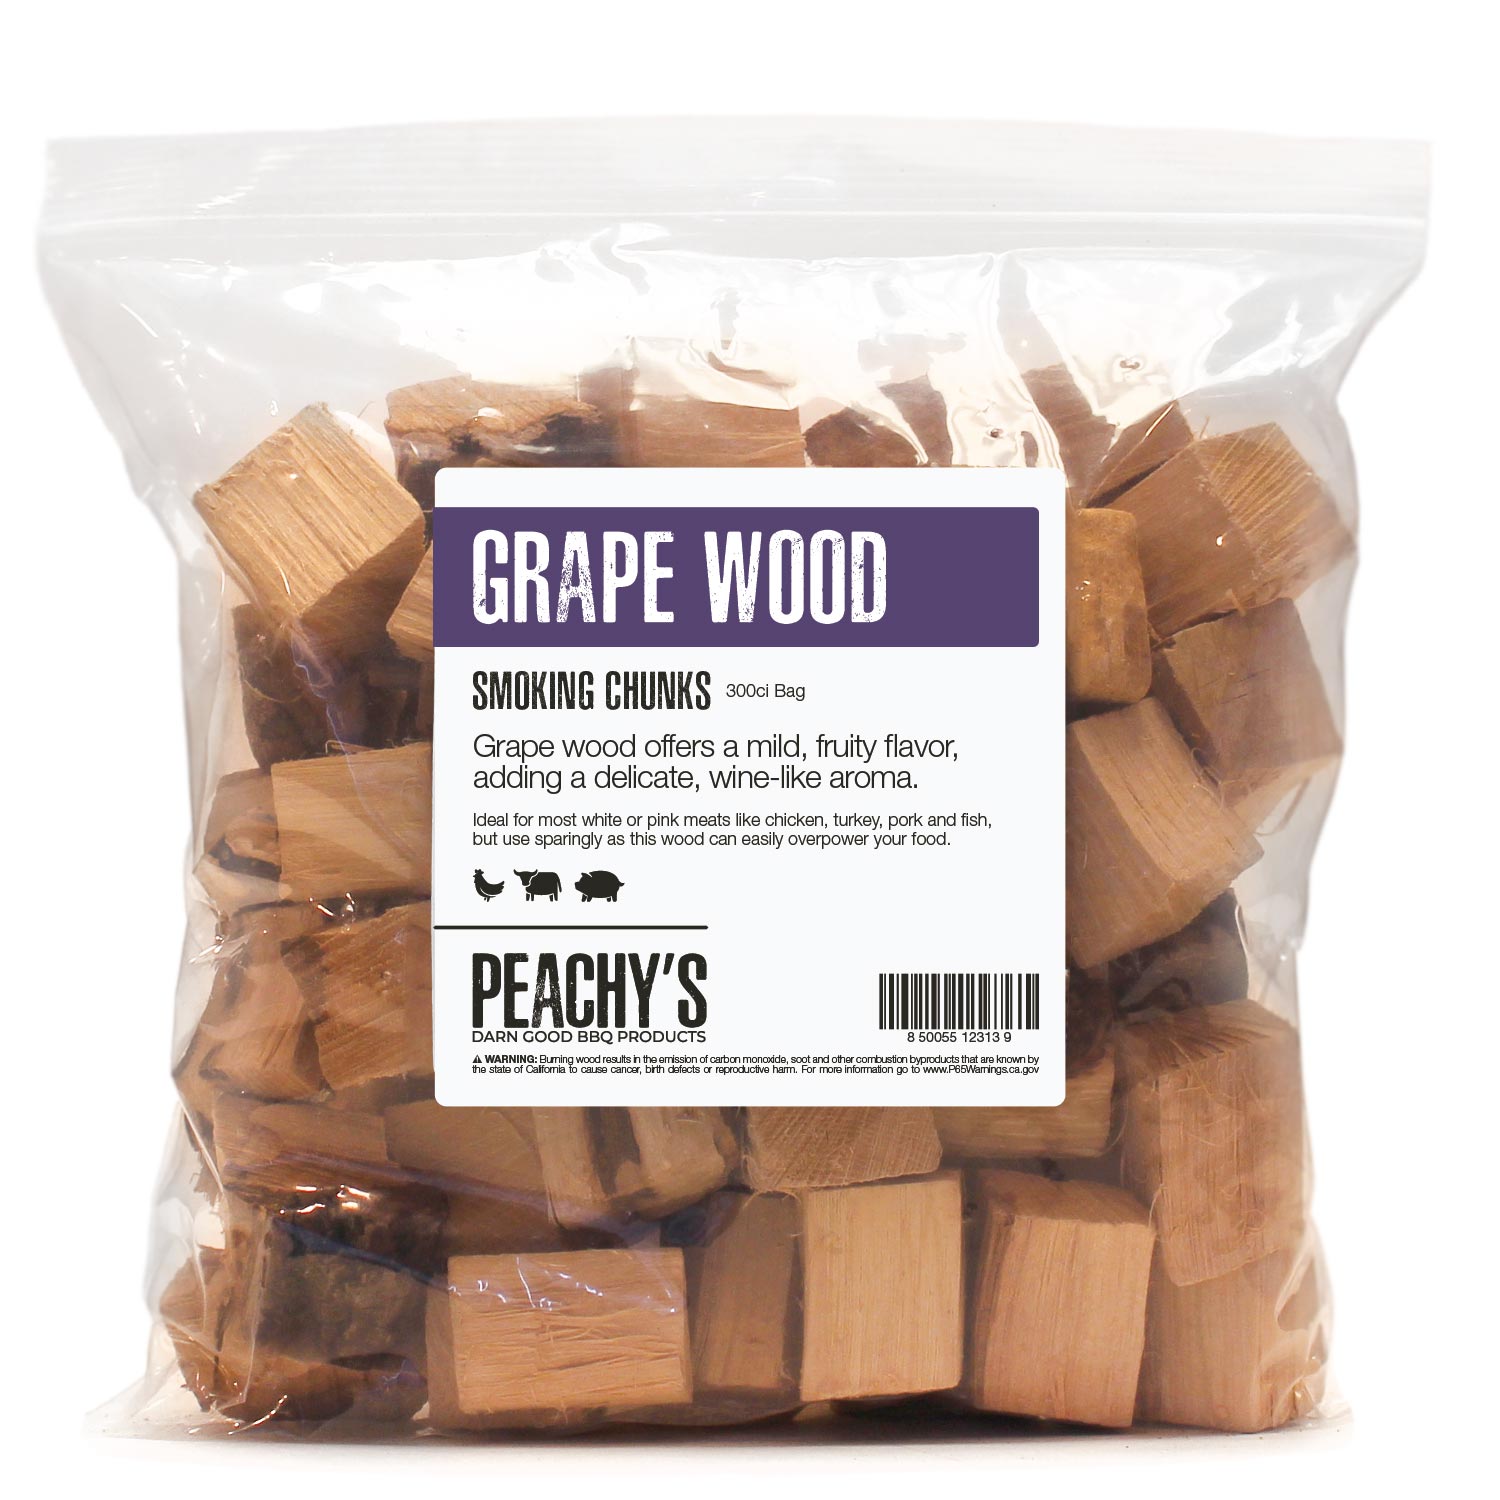 GRAPE Chunks | 300ci Bag of Premium Smoking Woods by PEACHY'S